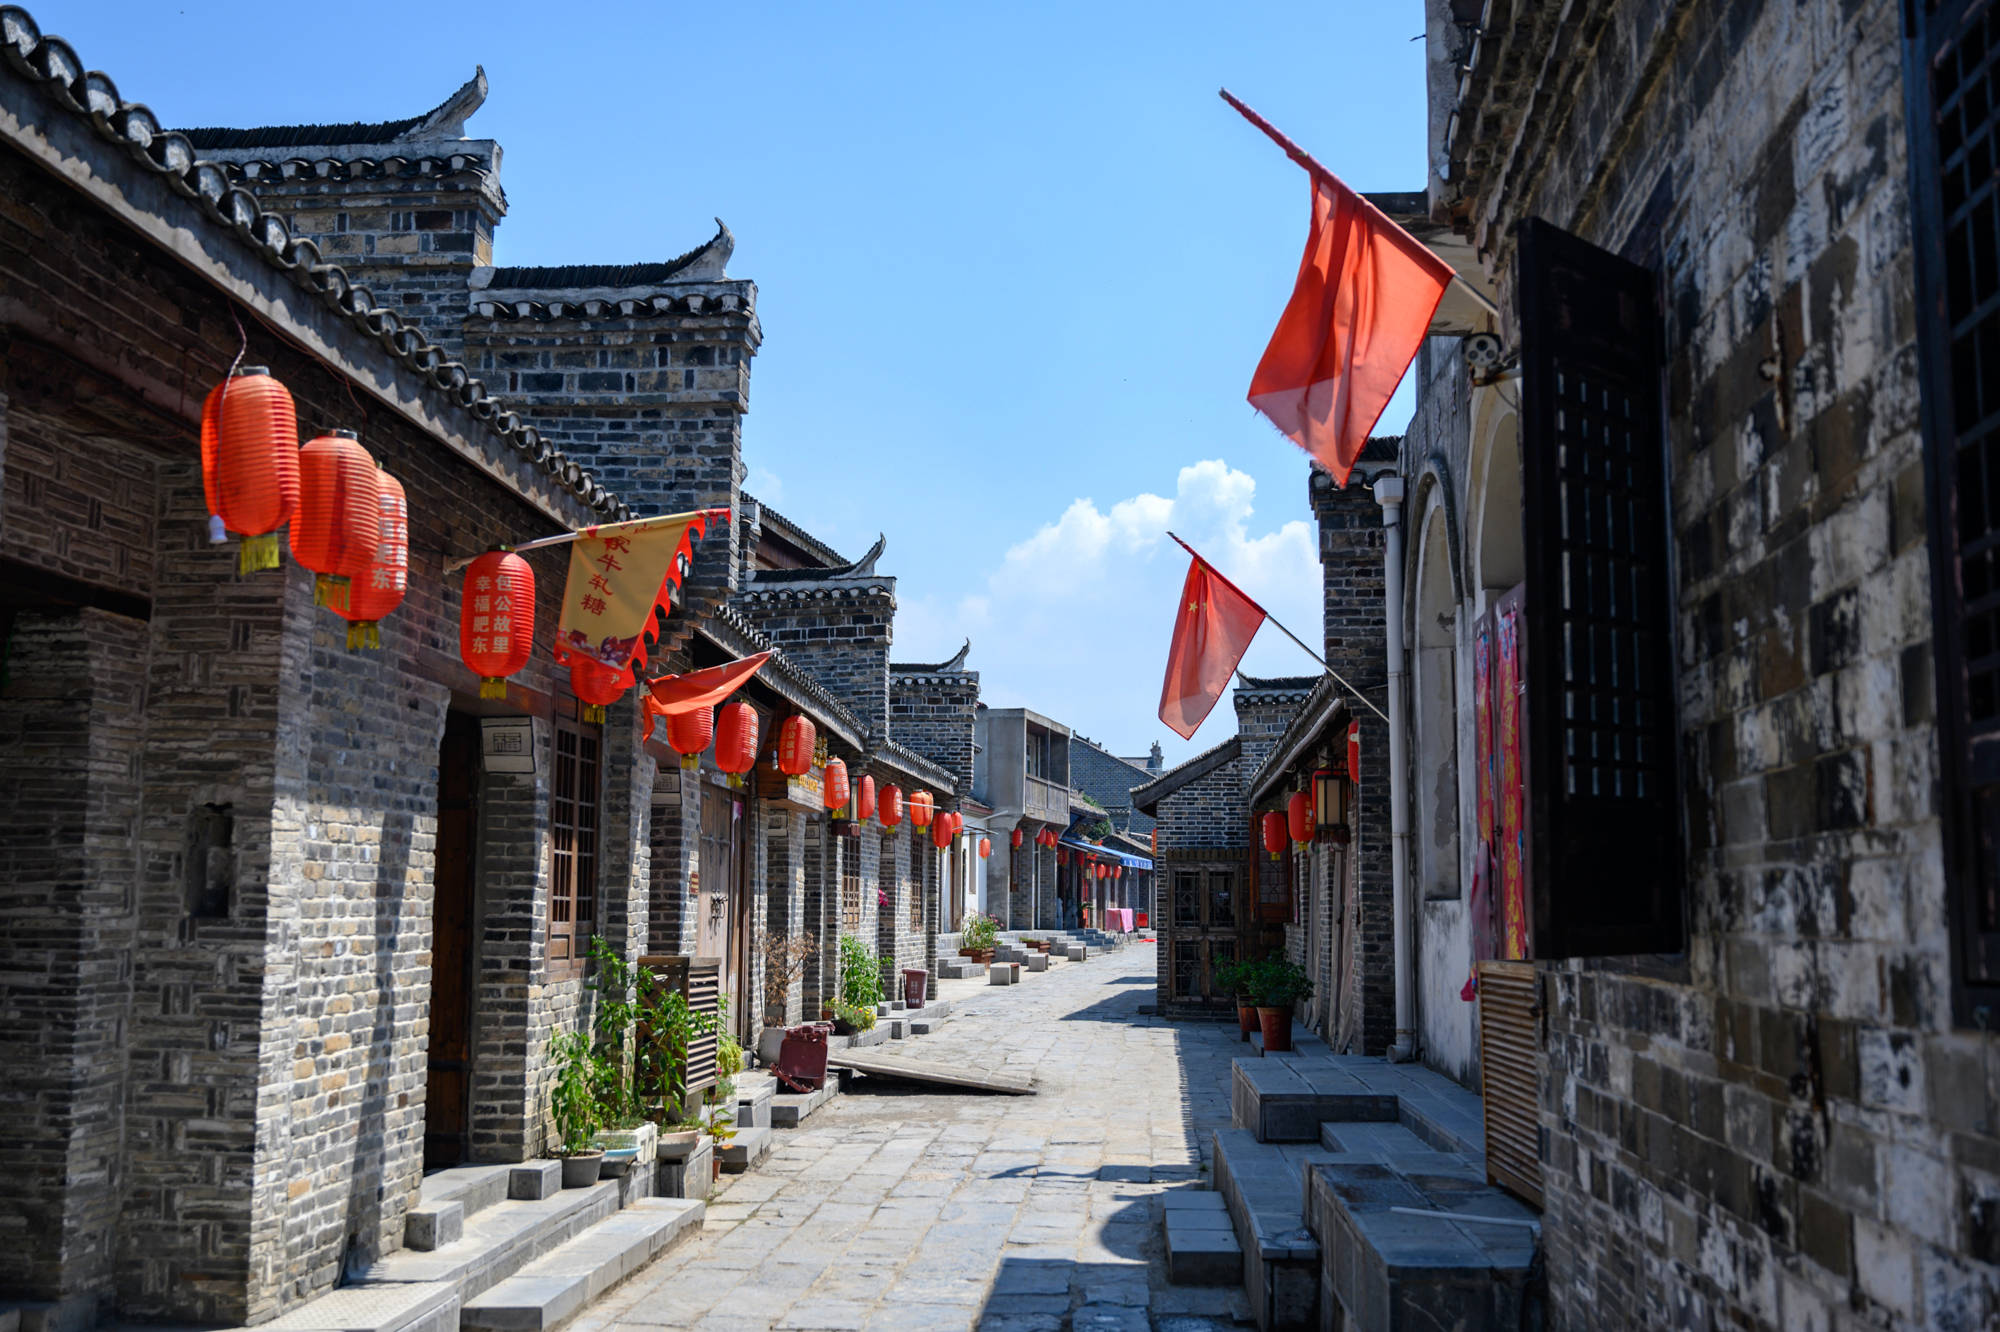 安徽有一条老街,曾经有小上海的美誉,现在却几乎没有游客